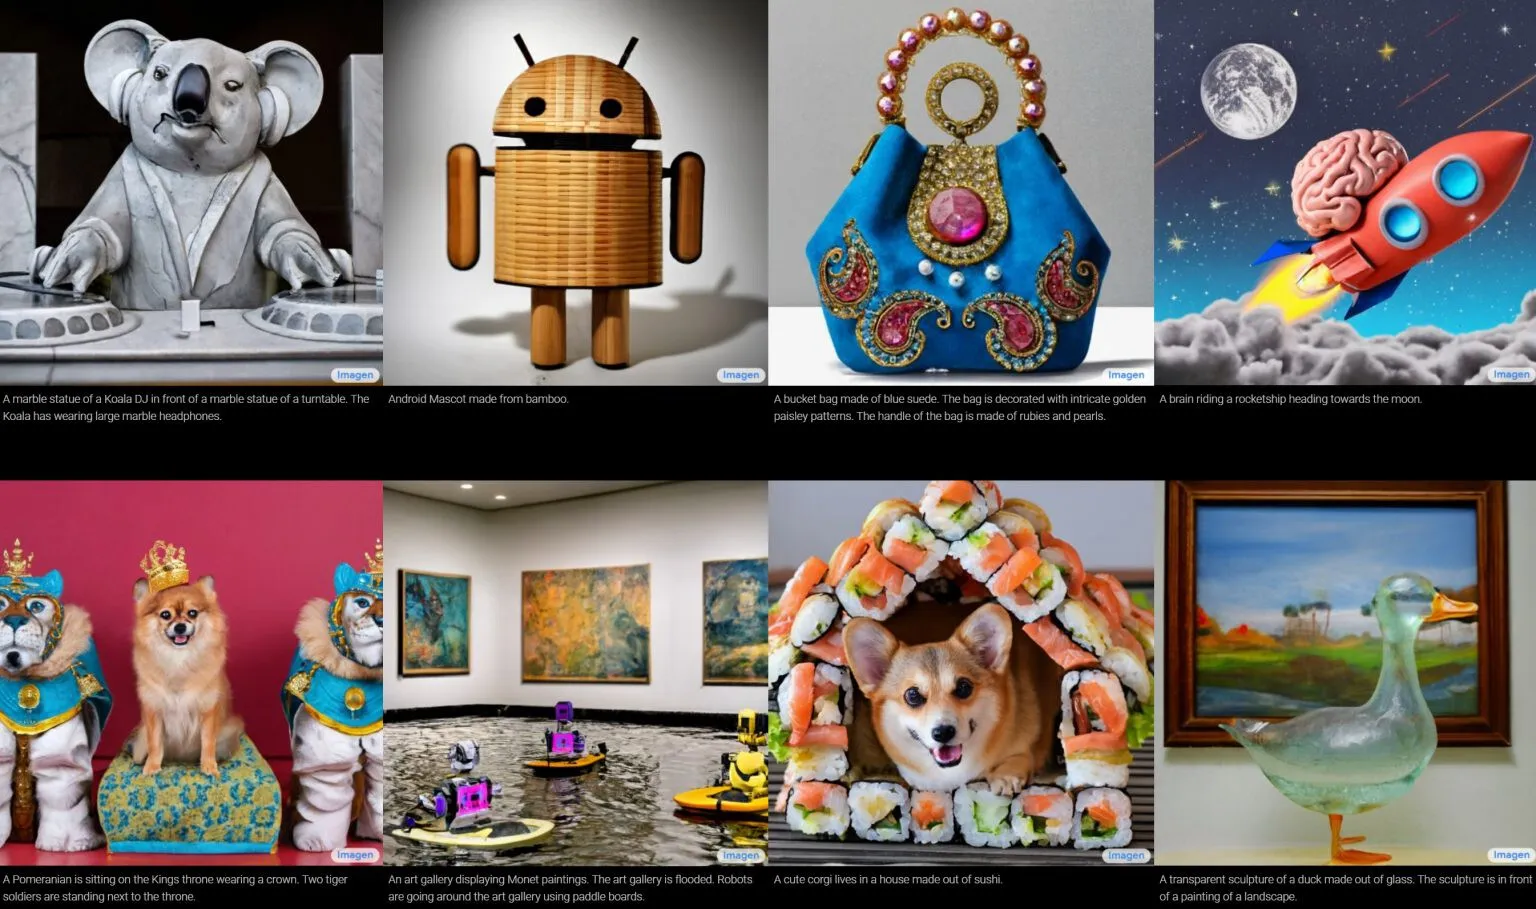 Google ahora es capaz de crear imágenes utilizando la inteligencia artificial